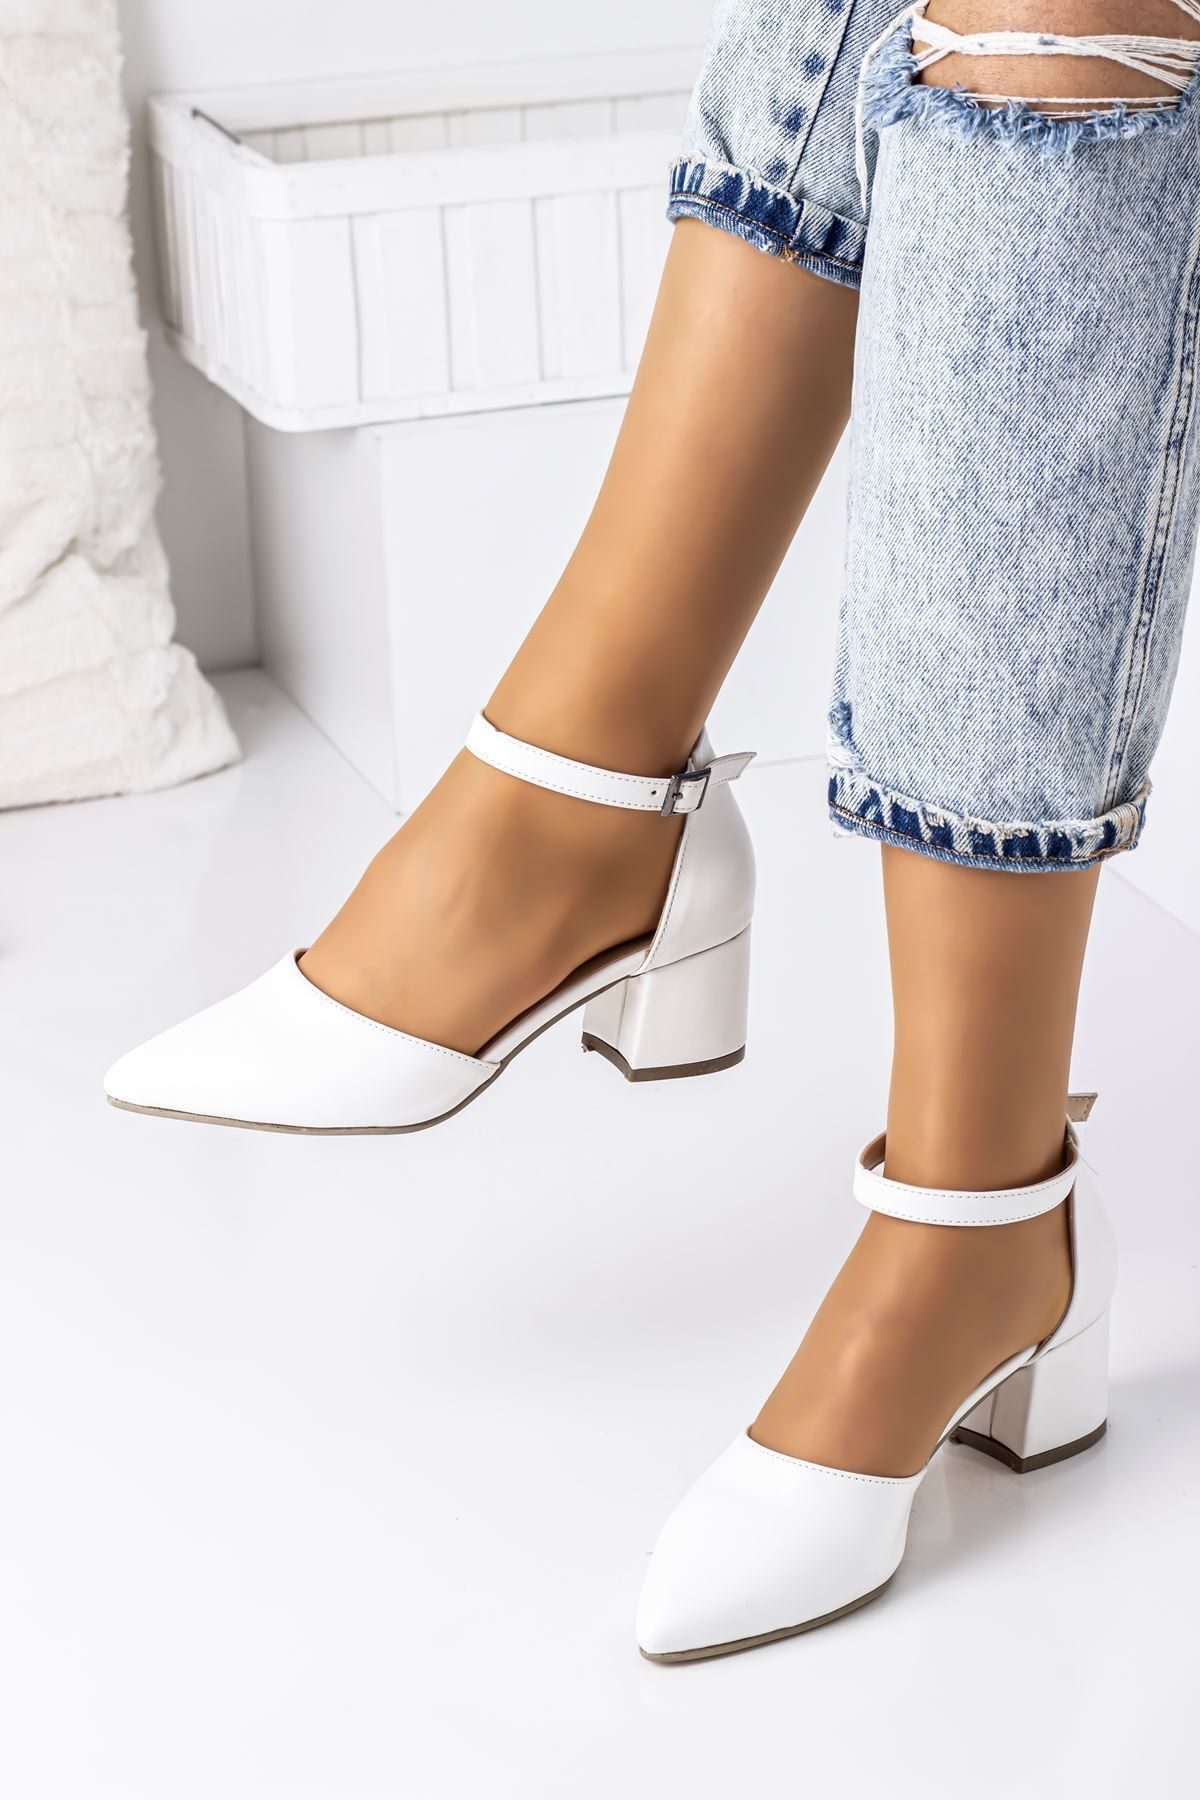 LAL SHOES & BAGS Bilekten Bağlamalı Bayan Topuklu Ayakkabı-beyaz